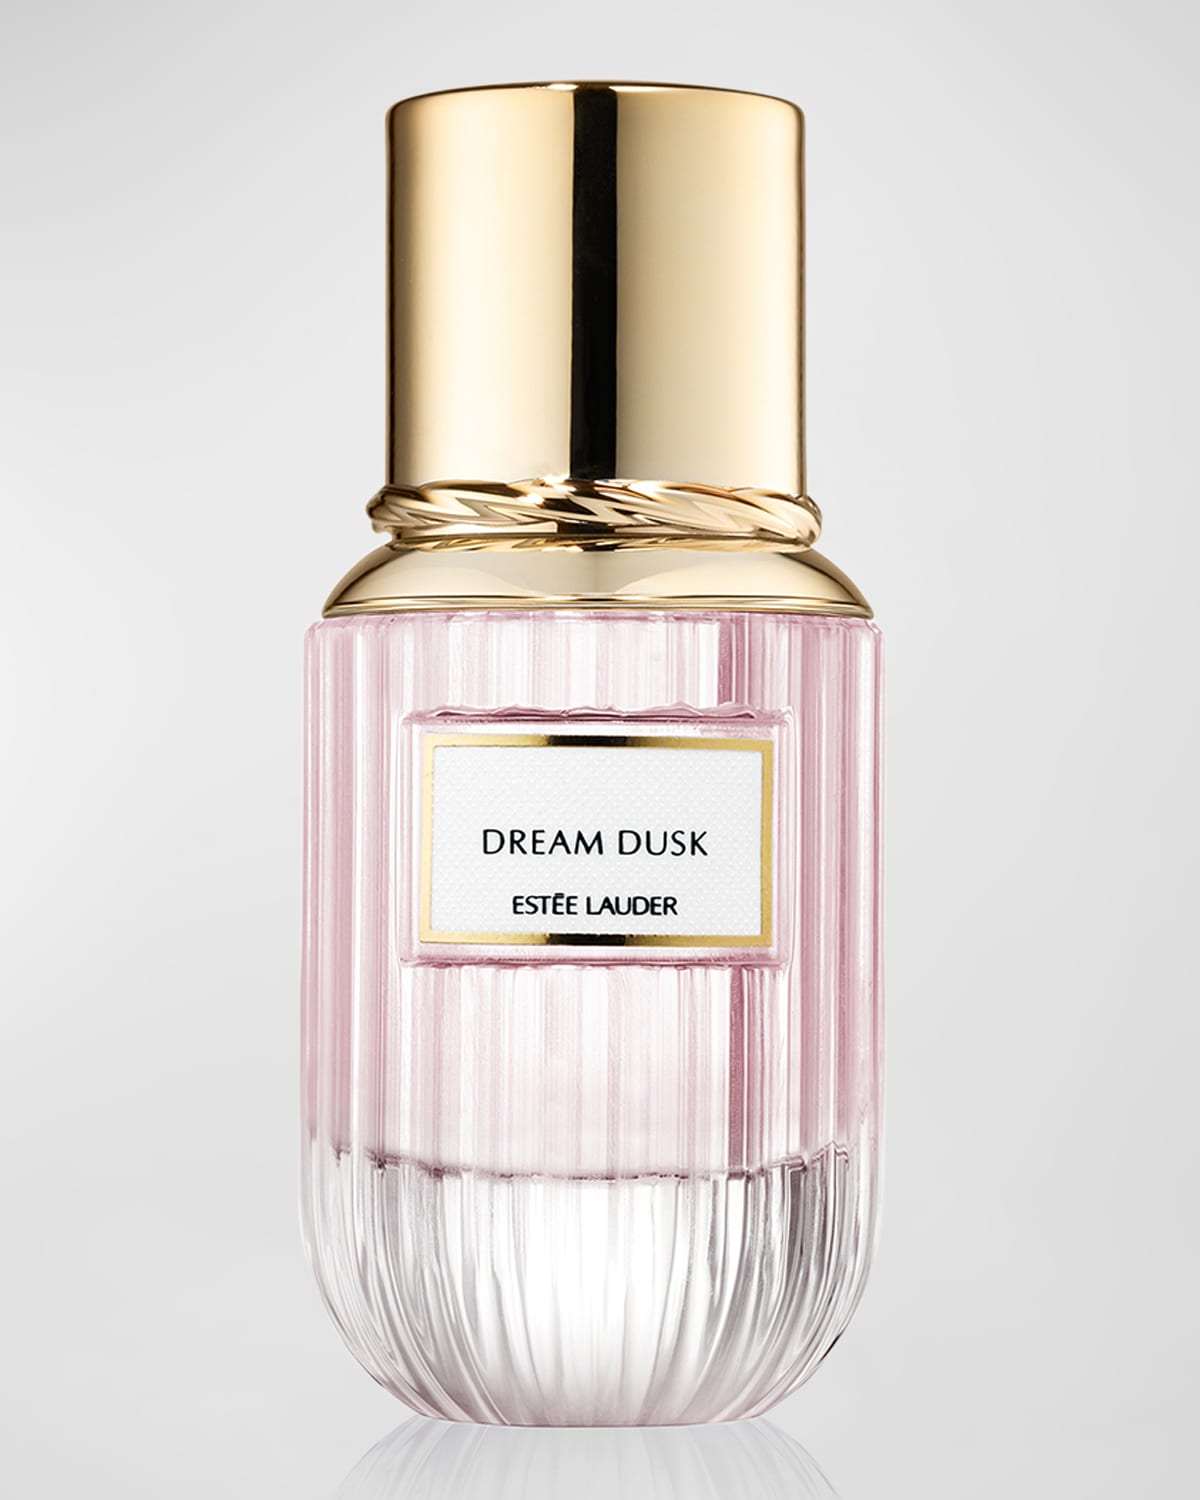 Dream Dusk Eau de Parfum, Yours with any $50 Estee Lauder Order